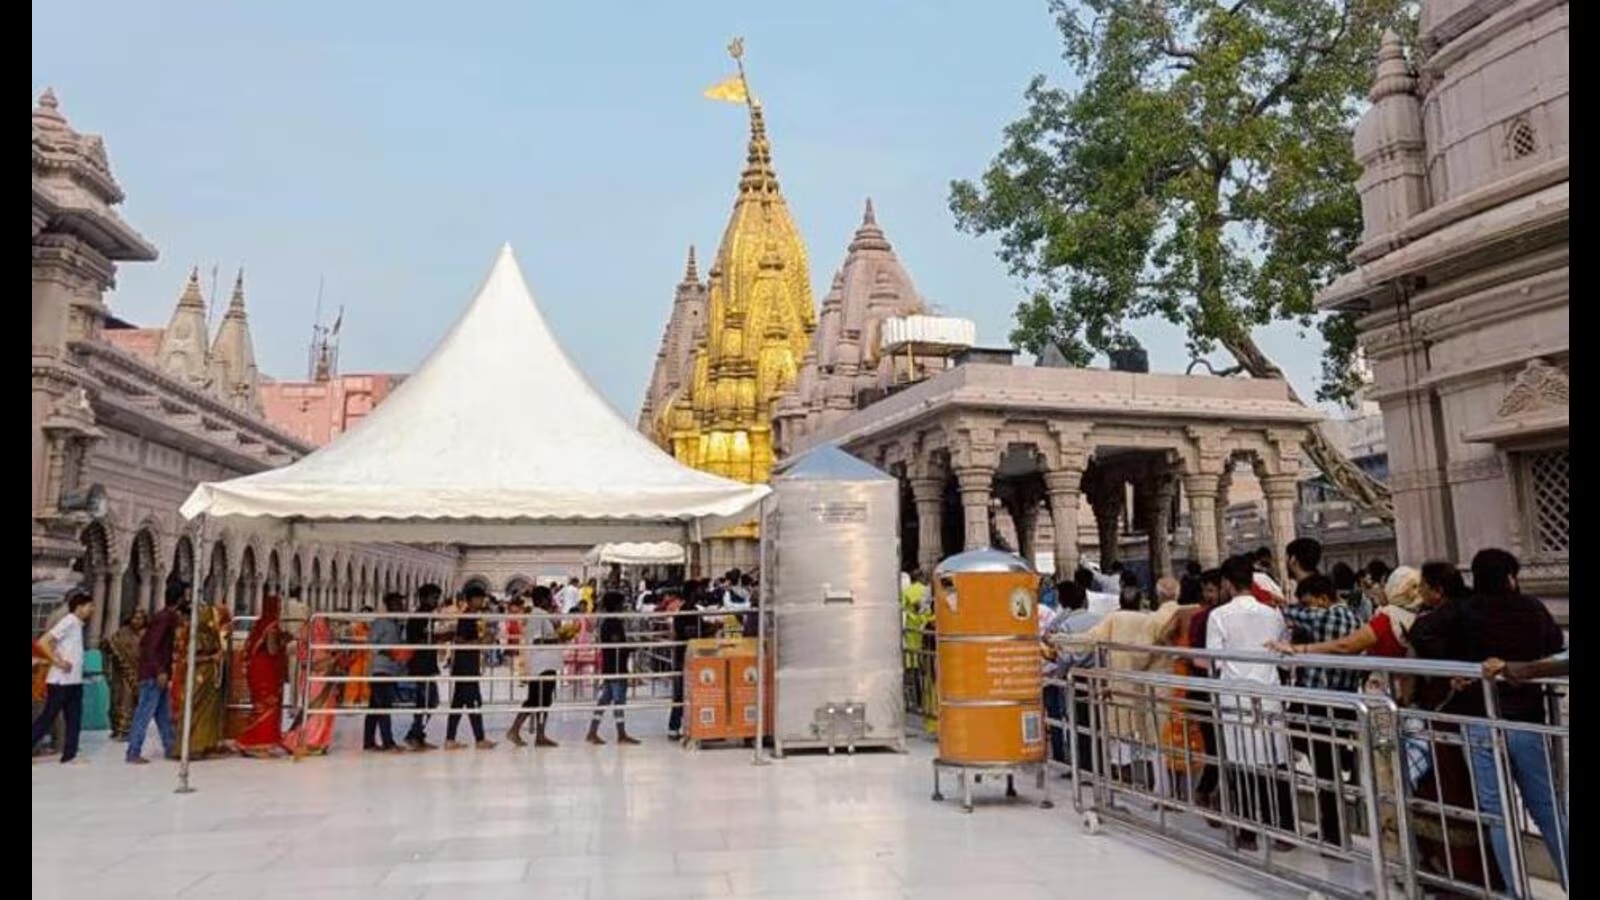 काशी और अयोध्या धार्मिक पर्यटन हॉटस्पॉट के रूप में उभरे, आगरा भारत में विदेशी पर्यटकों के लिए शीर्ष पसंद